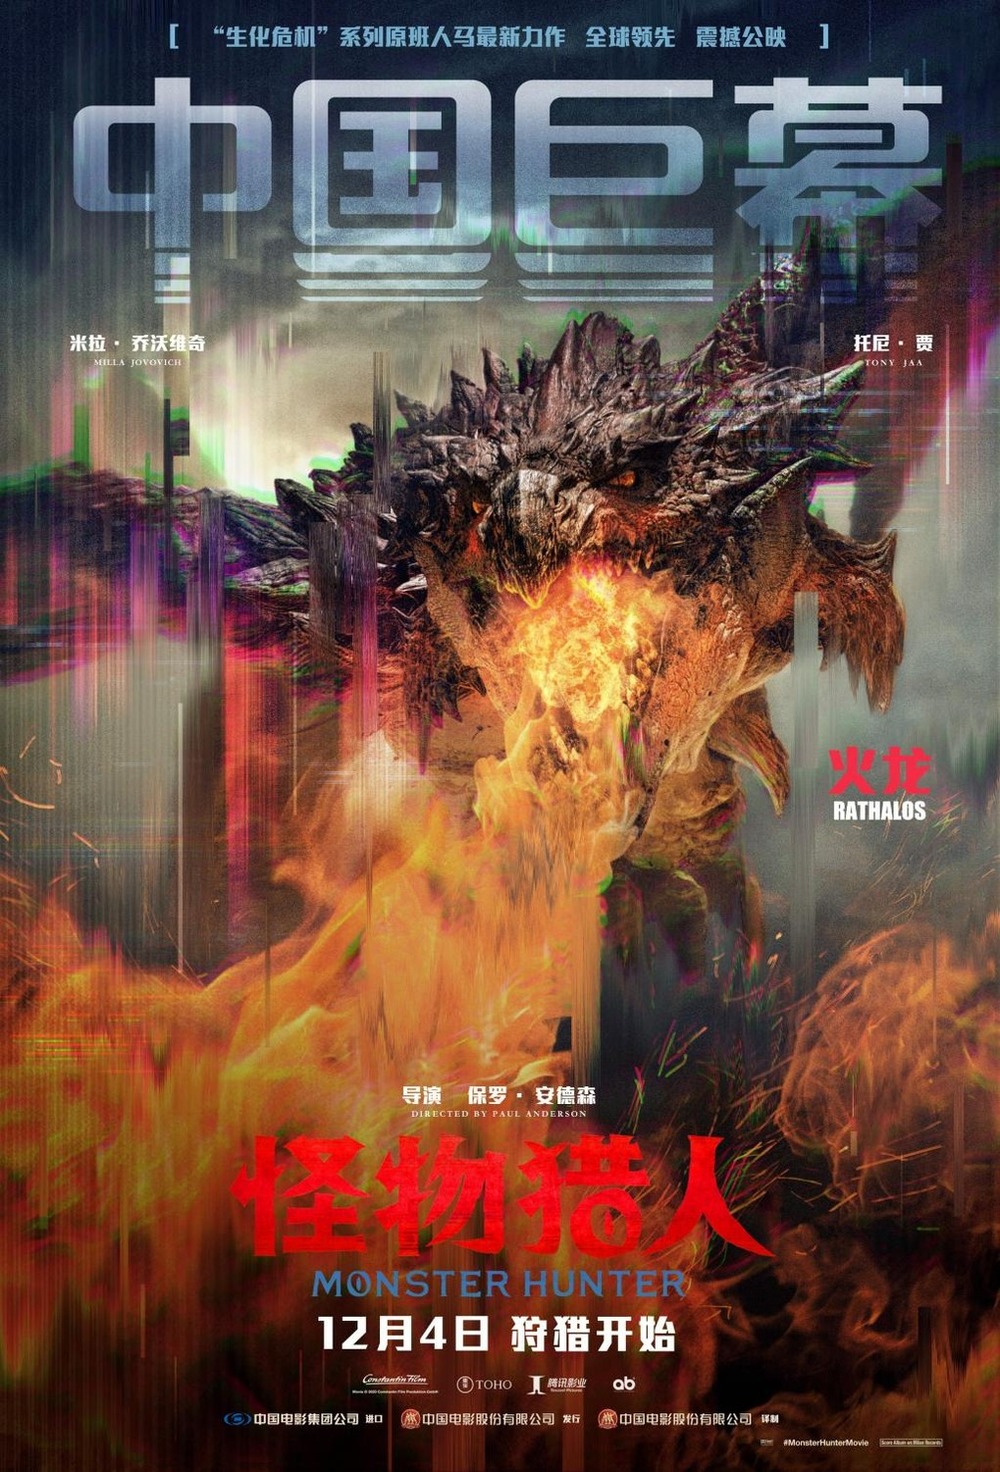 Monster Hunter DVD Release Date | Redbox, Netflix, iTunes, Amazon